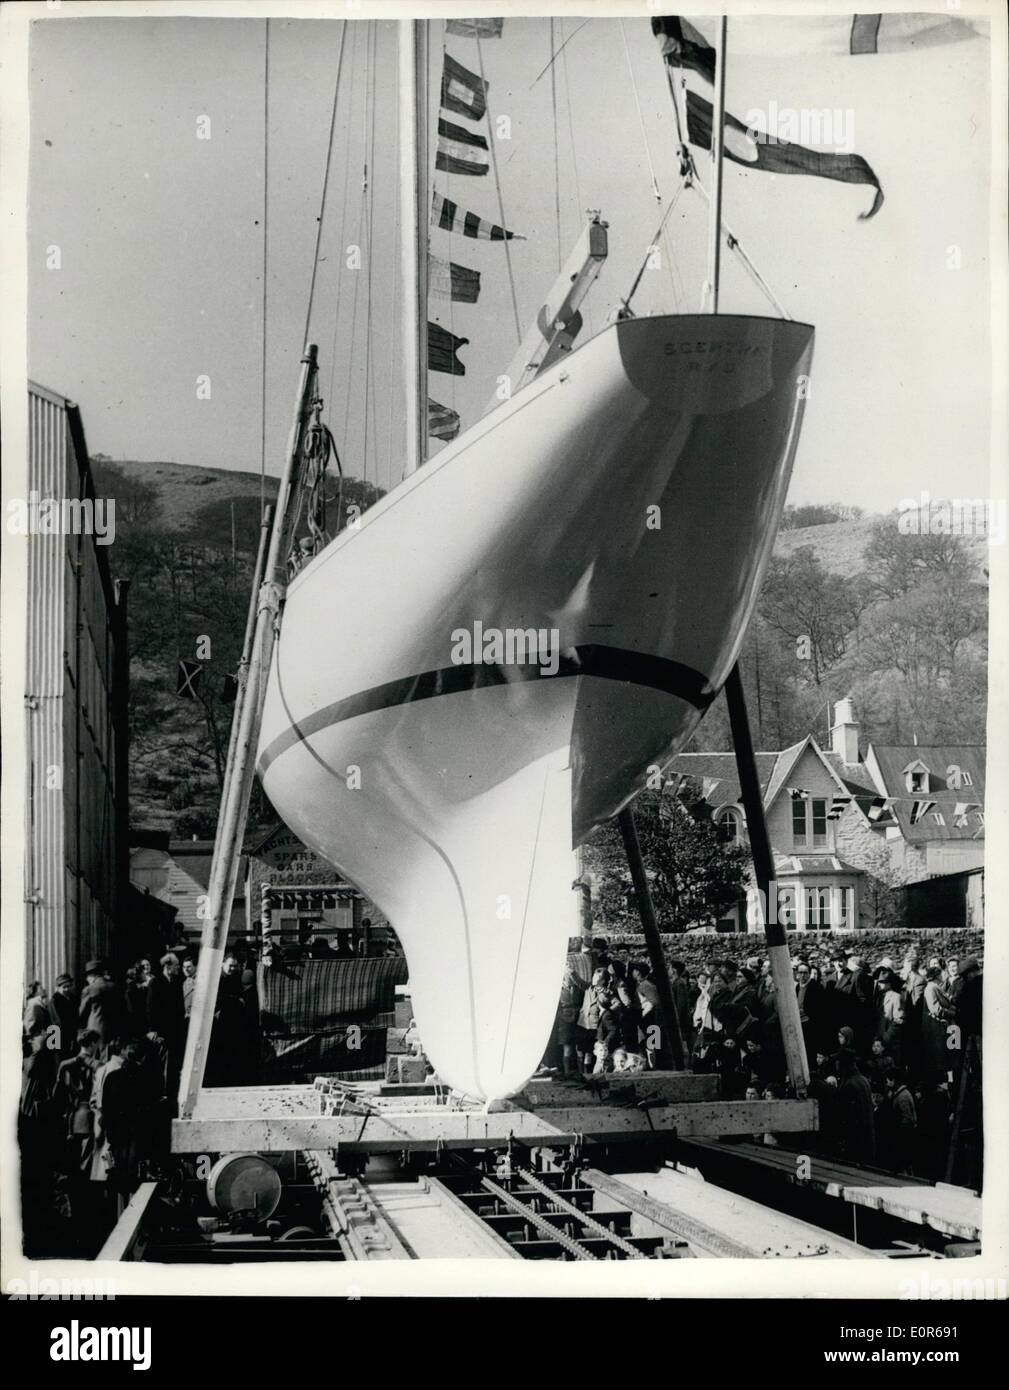 Avril 04, 1958 - Lancement de la Challenger de l'America's cup. : le yacht, le Sceptre, le challenger de l'America's Cup au large de Rhode Island, en septembre prochain, a été lancé dans la Sandpoint à banc, Argyil, Ecosse, hier par Lady Gore, l'épouse de Sir Ralph Gore, commodore du Royal Yacht Squadron. Photo show le yacht de Sceptre se trouve dans la cale avant le lancement d'hier. Banque D'Images